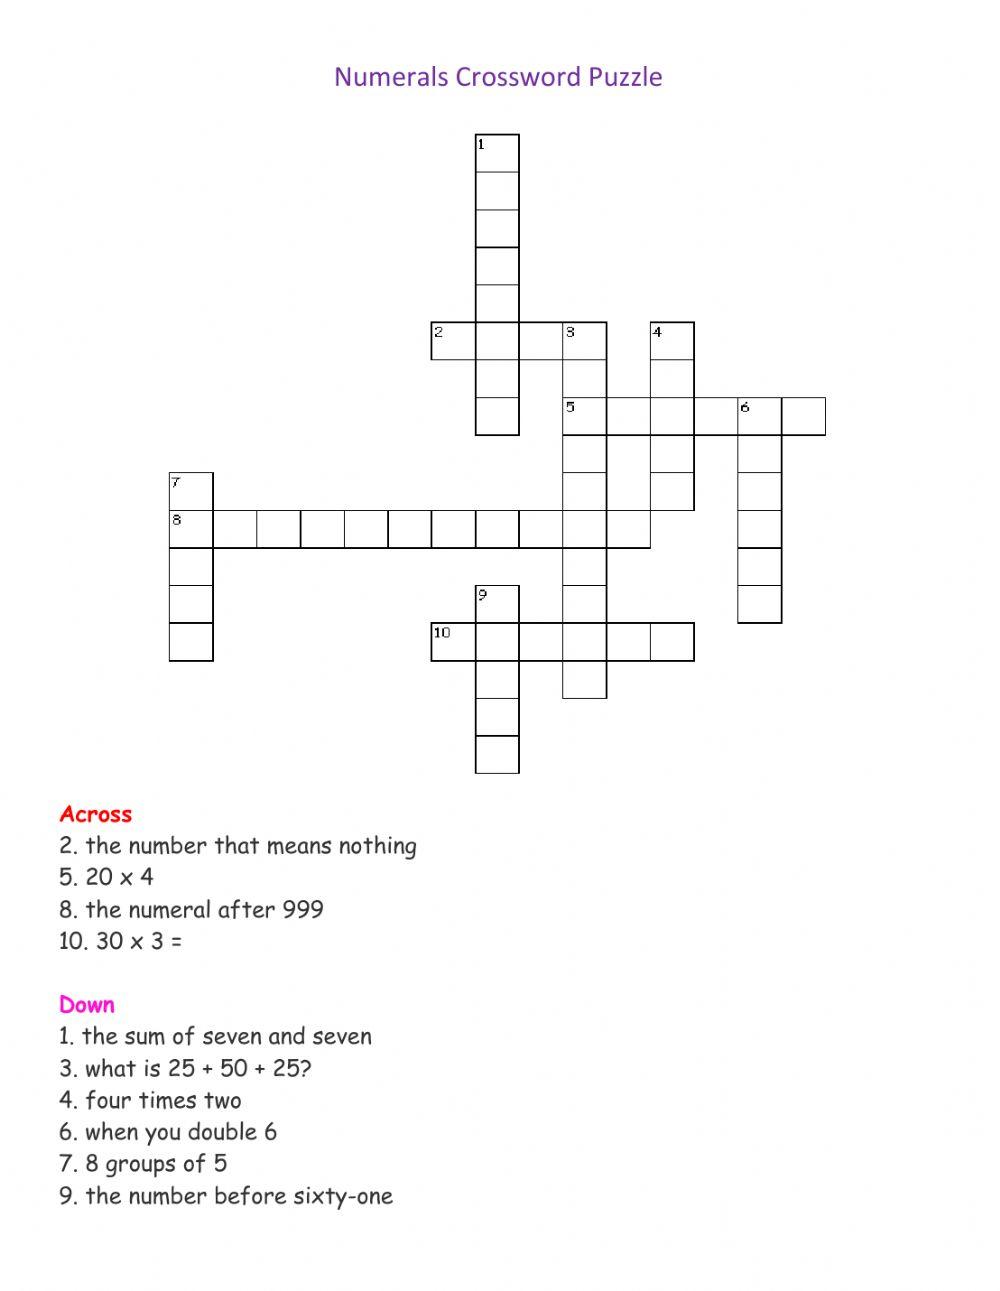 Numeral Crossword Puzzle